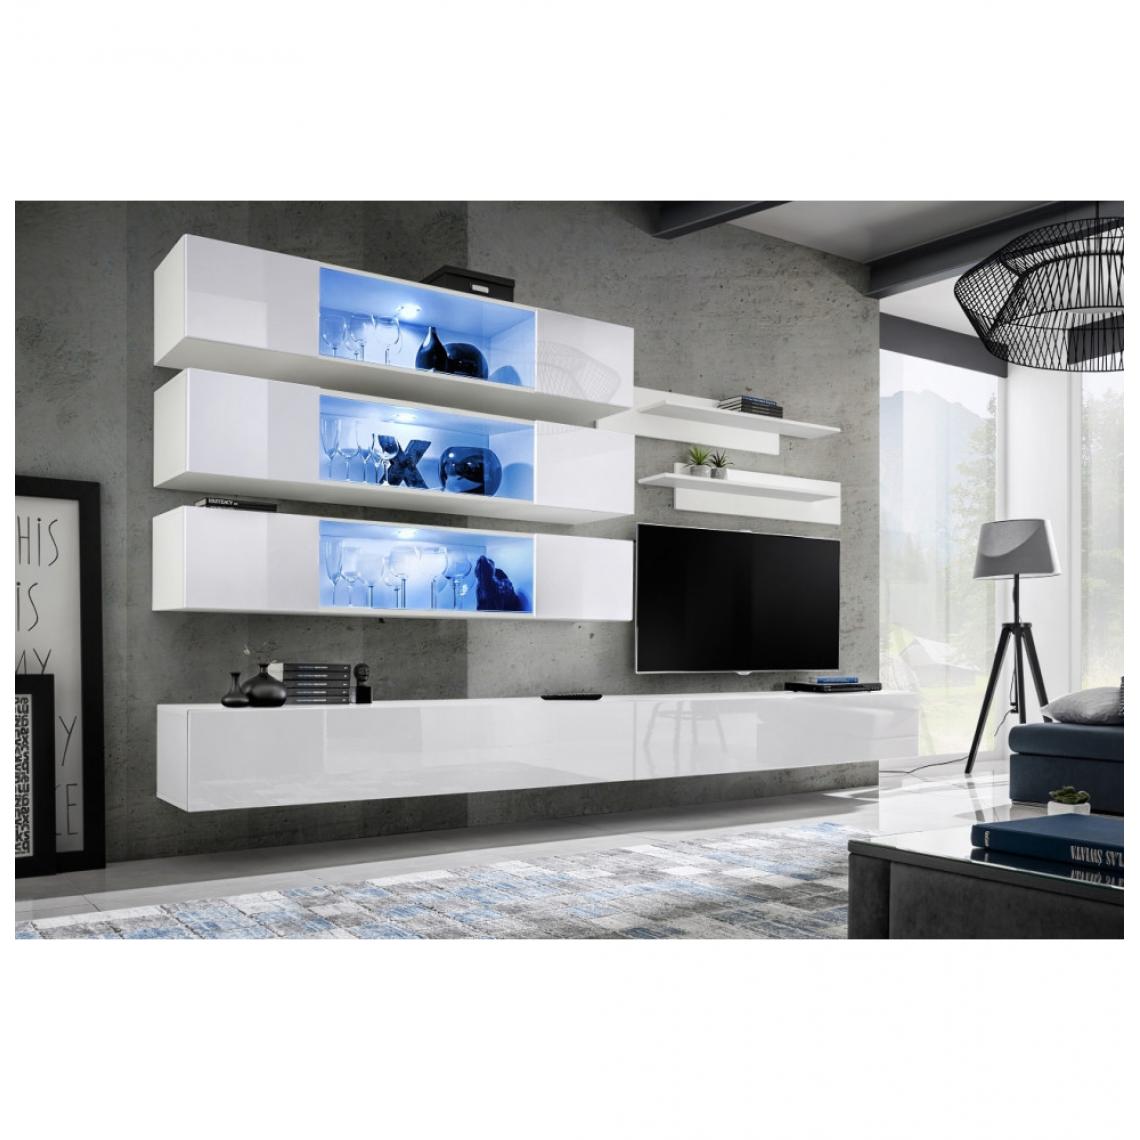 Ac-Deco - Ensemble mural - FLY J - 3 rangements LED - 2 meubles TV - 2 étagères - Blanc - Modèle 2 - Meubles TV, Hi-Fi